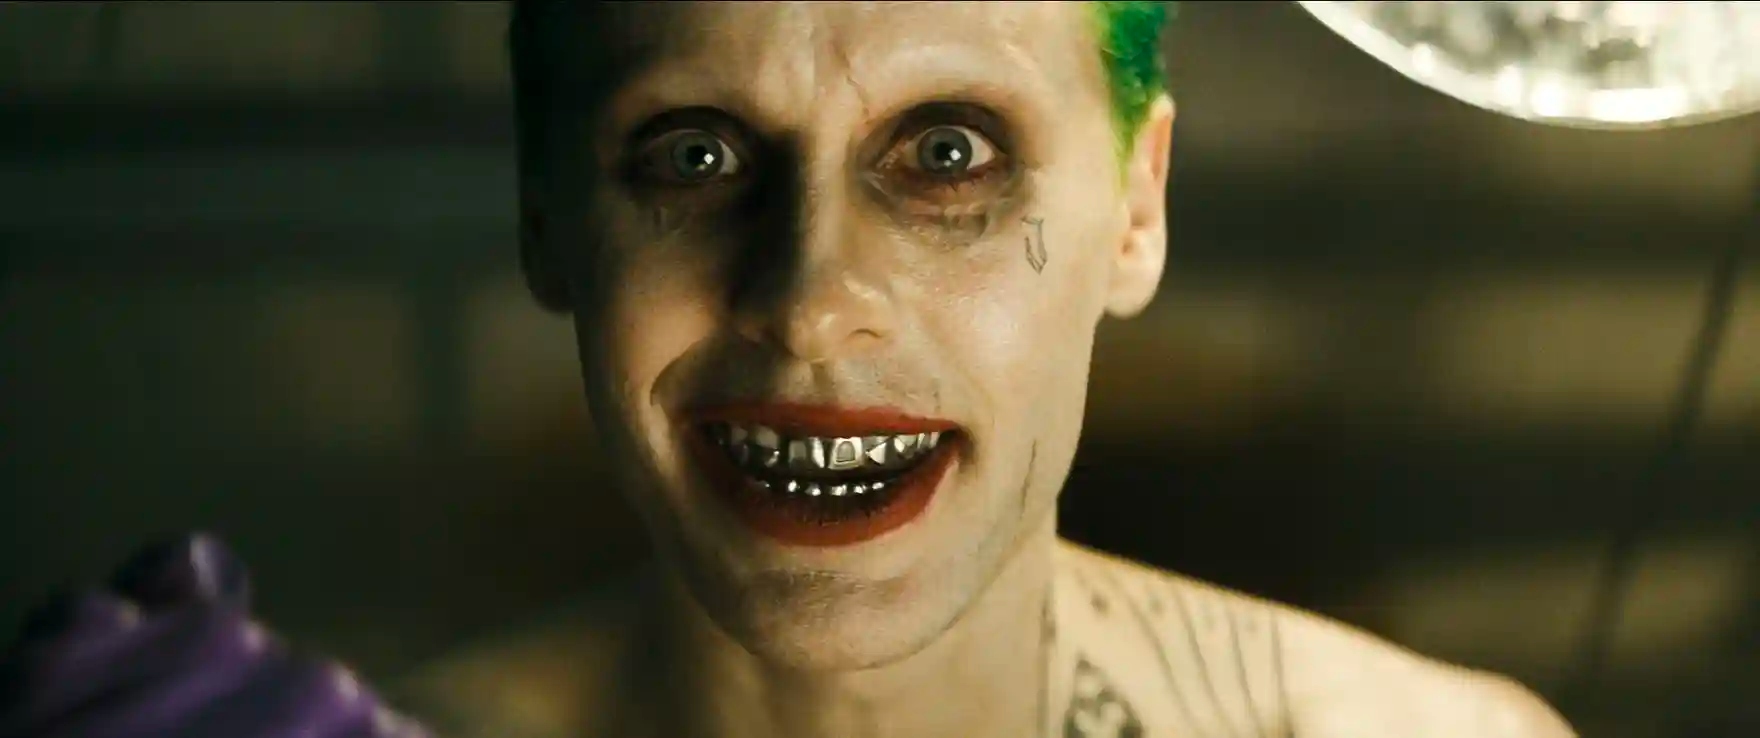 Revelan nueva foto de Jared Leto como Joker